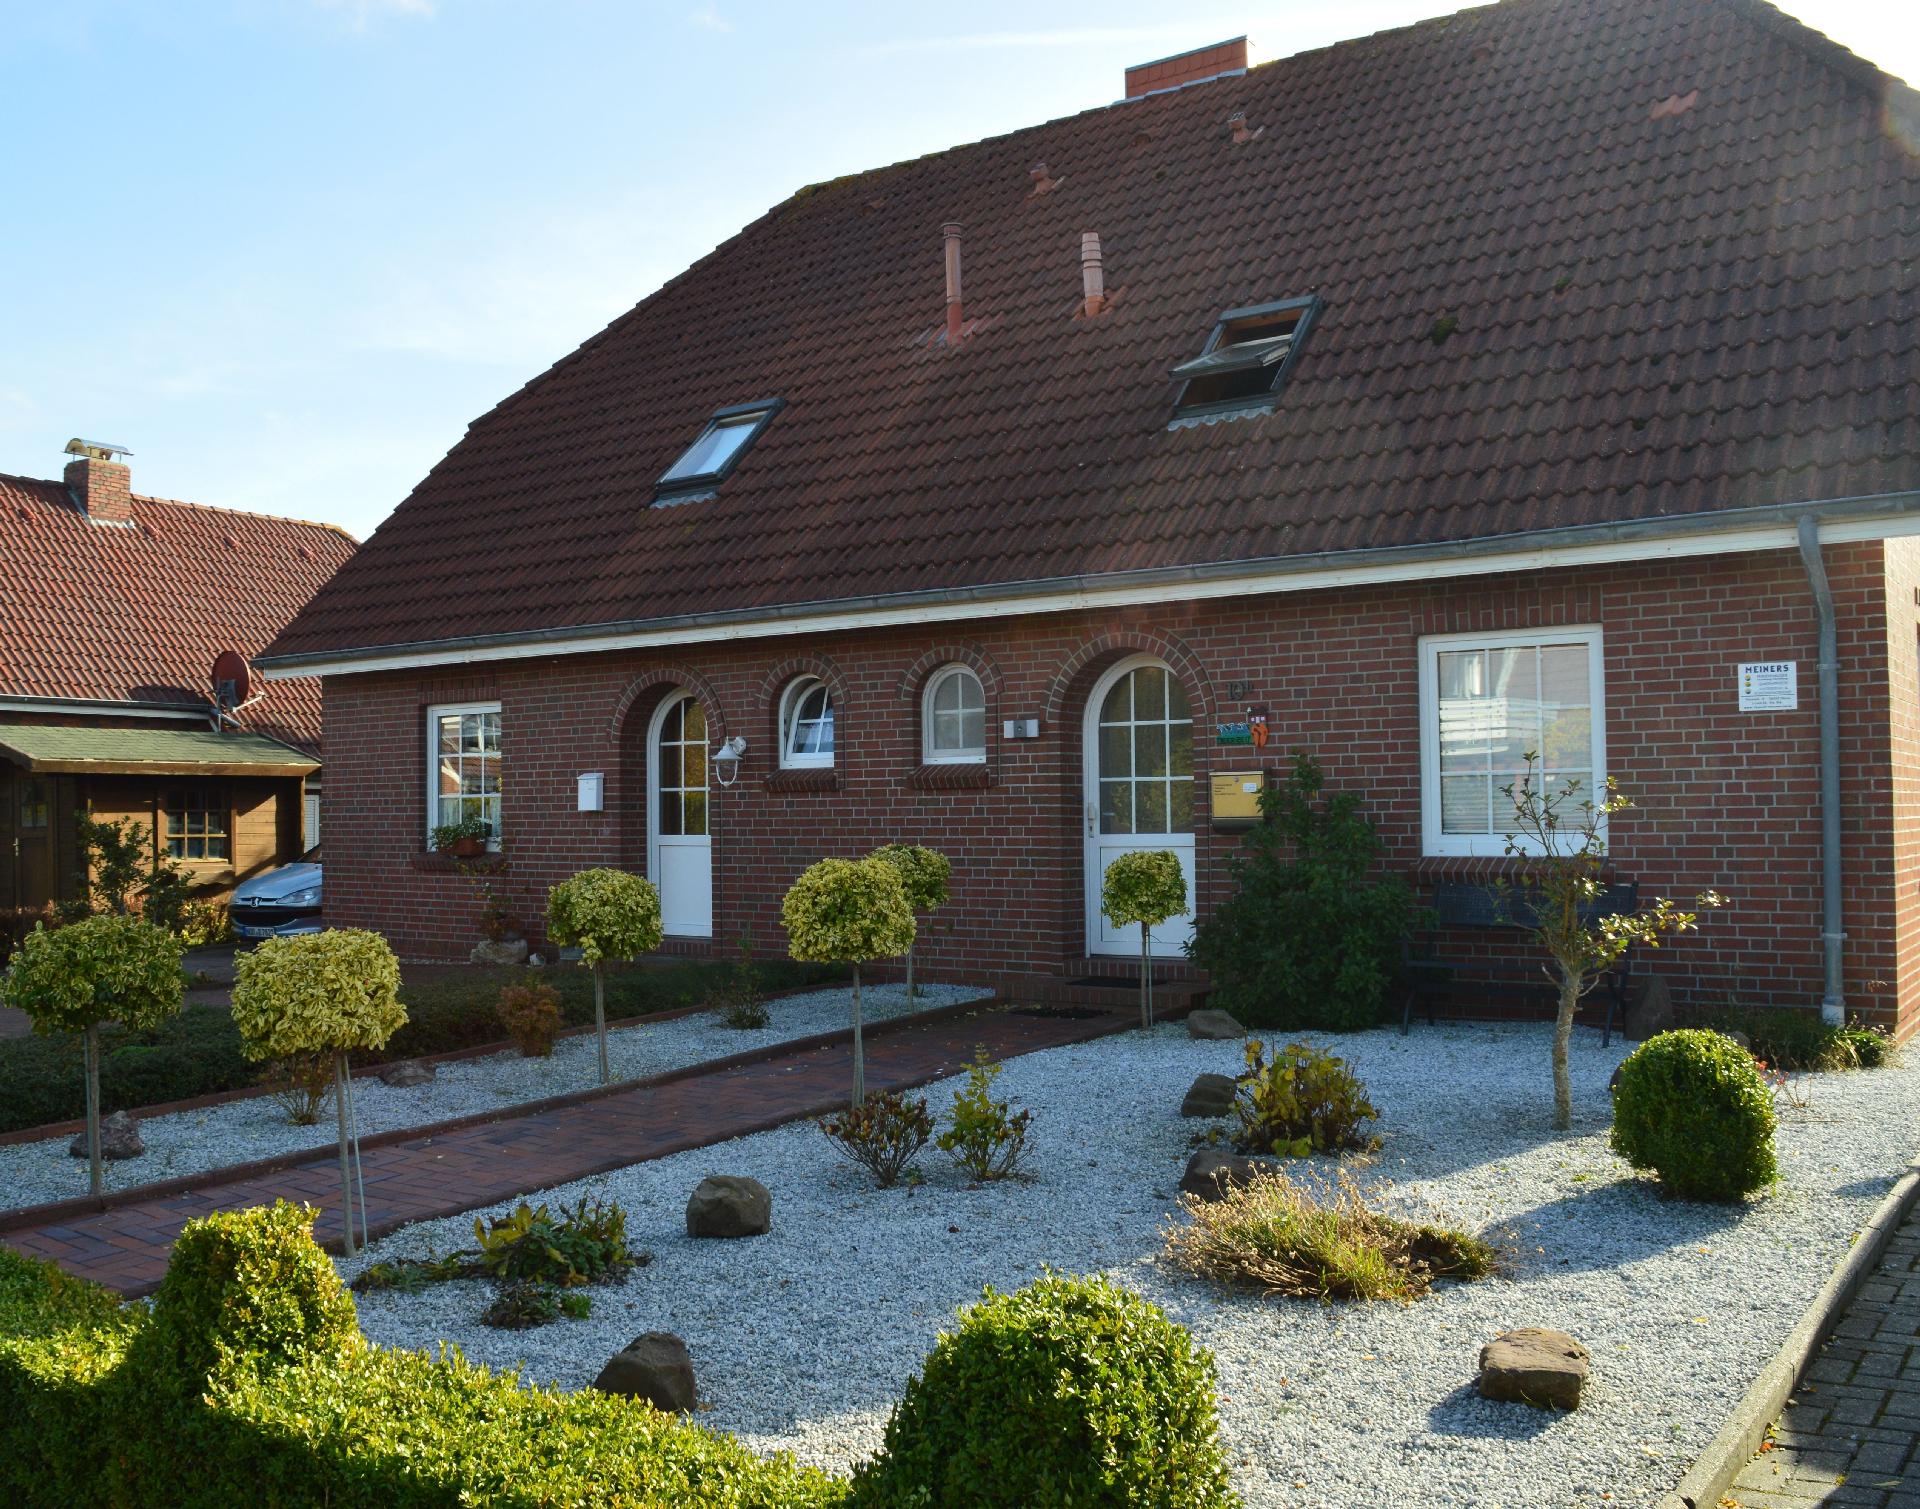  Ferienhaus mit Terrasse, Garten und Fahrradnutzun Ferienhaus  Neßmersiel